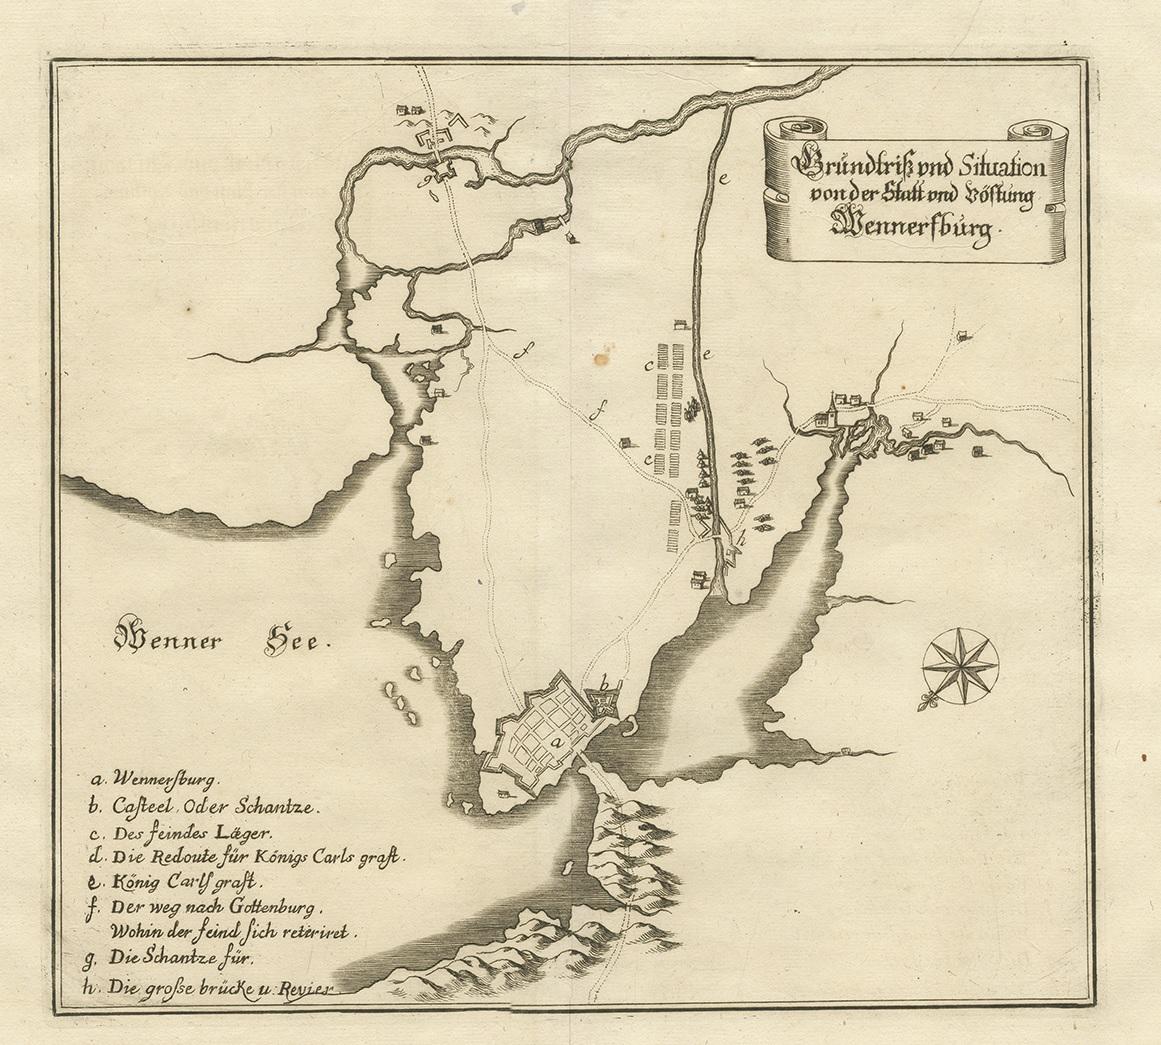 Antique map titled 'Grundtriss und Situation von der Statt und Vöstung Wennersburg'. Copper engraved plan of Vänersborg, Sweden. This map orginates from 'Theatrum Europaeum' by Merian, circa 1680.